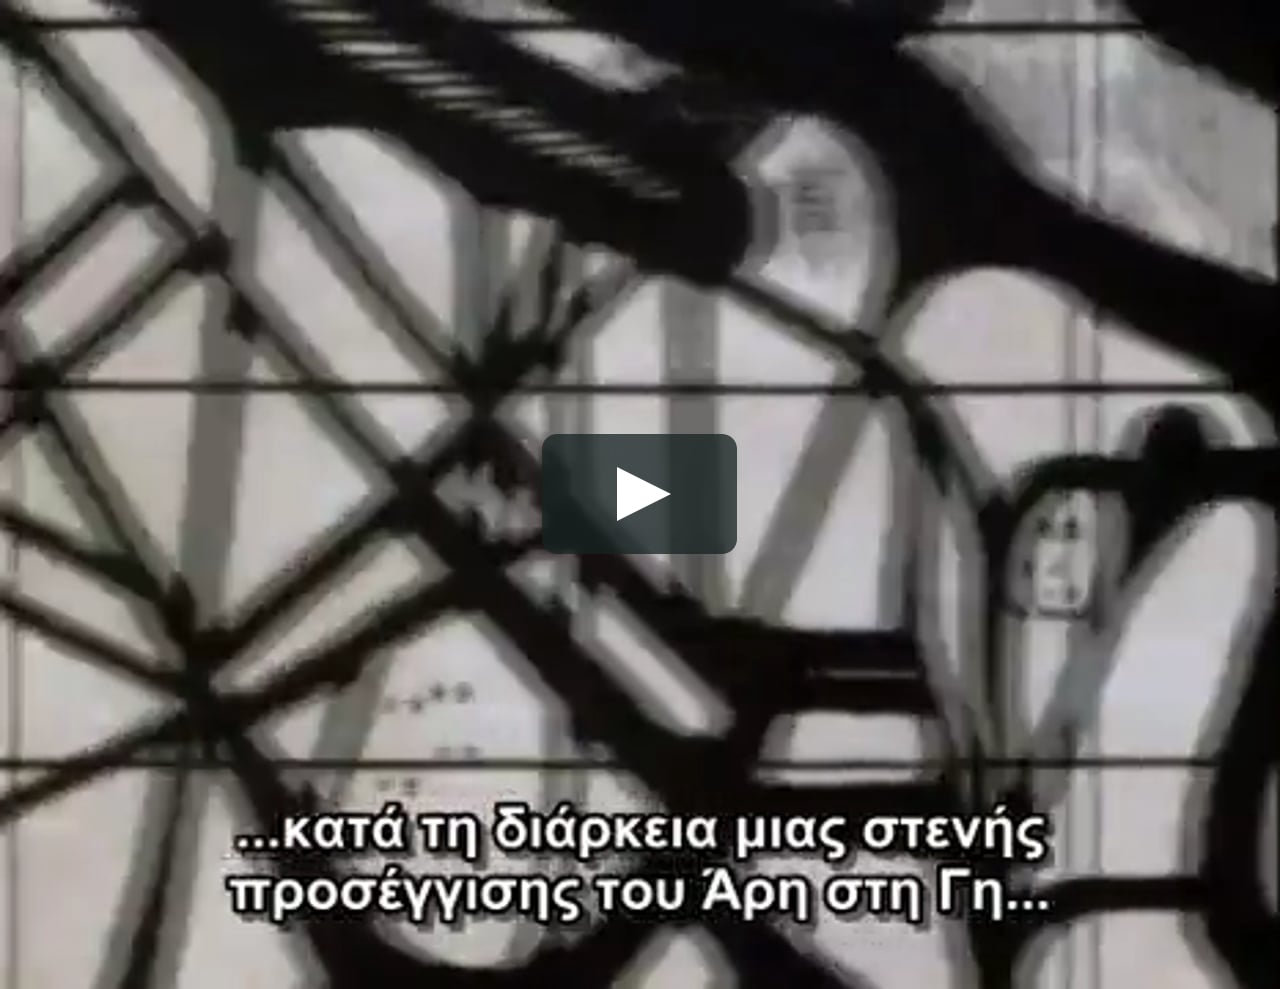 carl-sagan-cosmos-episode-4-greek-subs-on-vimeo